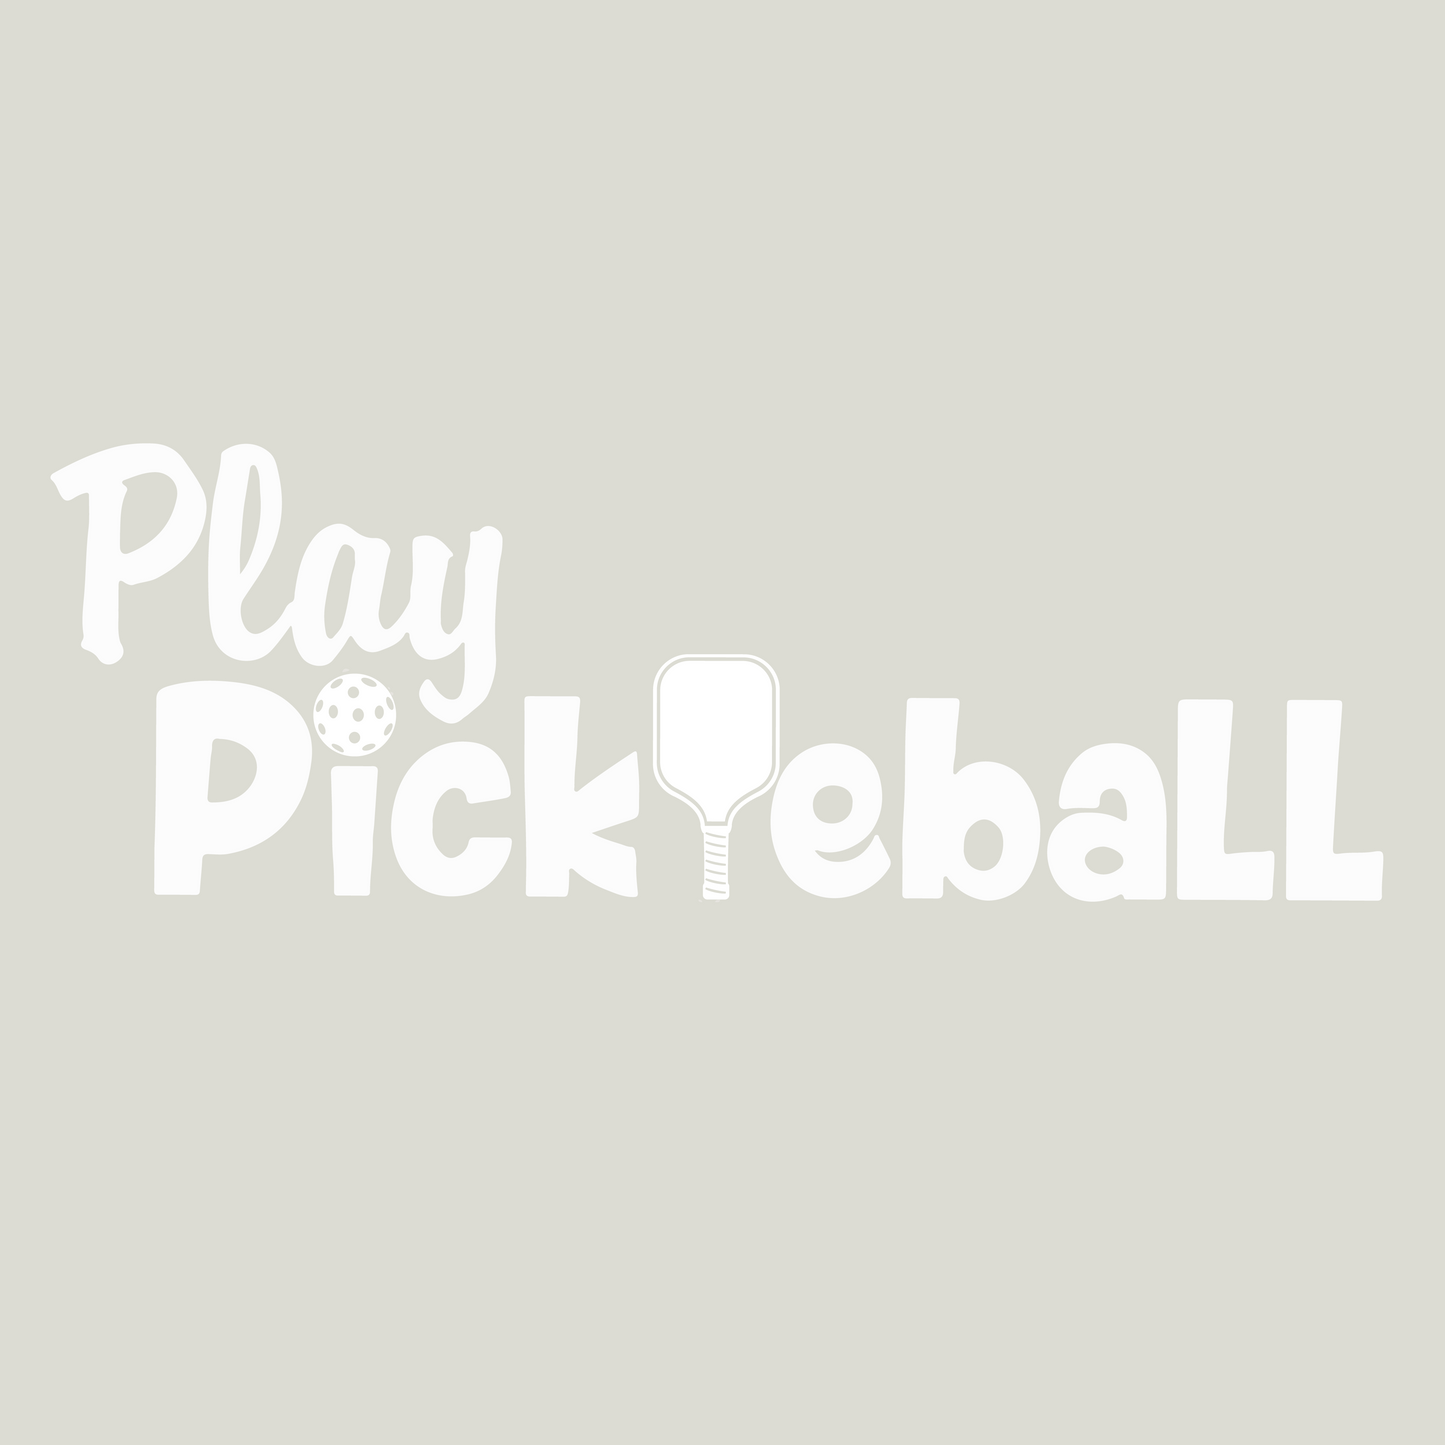 Play Pickleball | Women's Short Sleeve V-Neck Pickleball Shirts | 100% Polyester